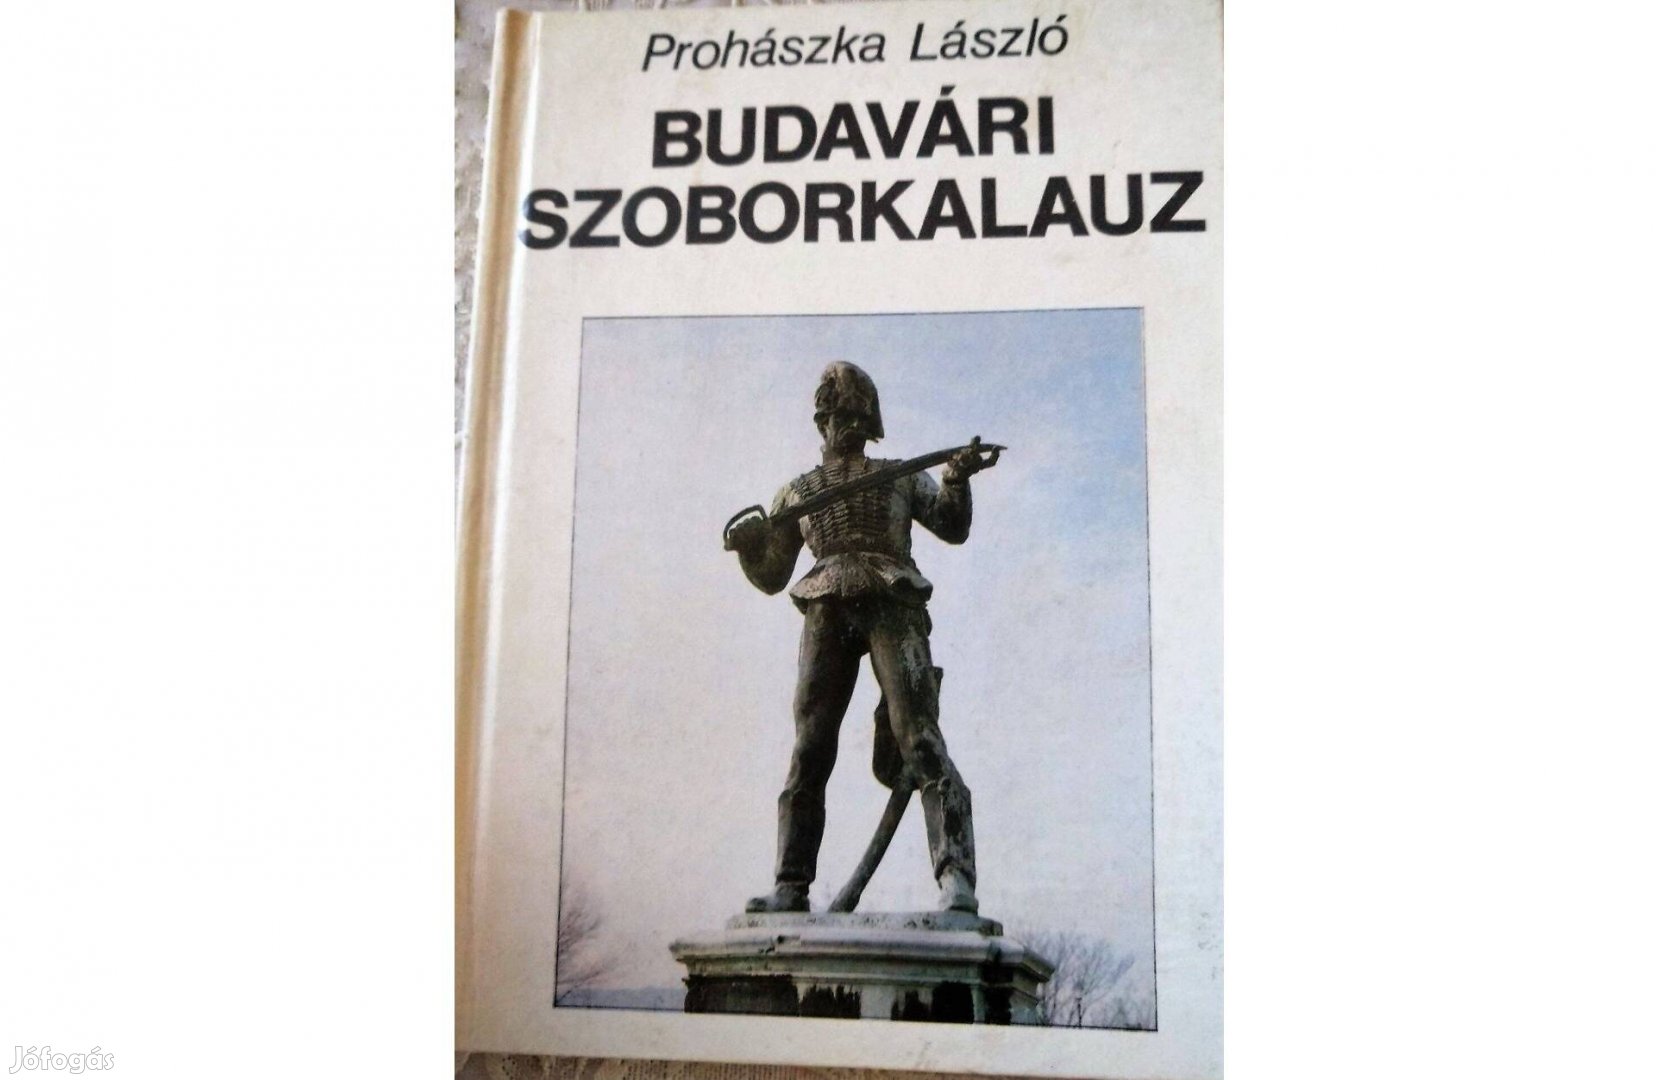 Budavári szoborkalauz/Prohászka László